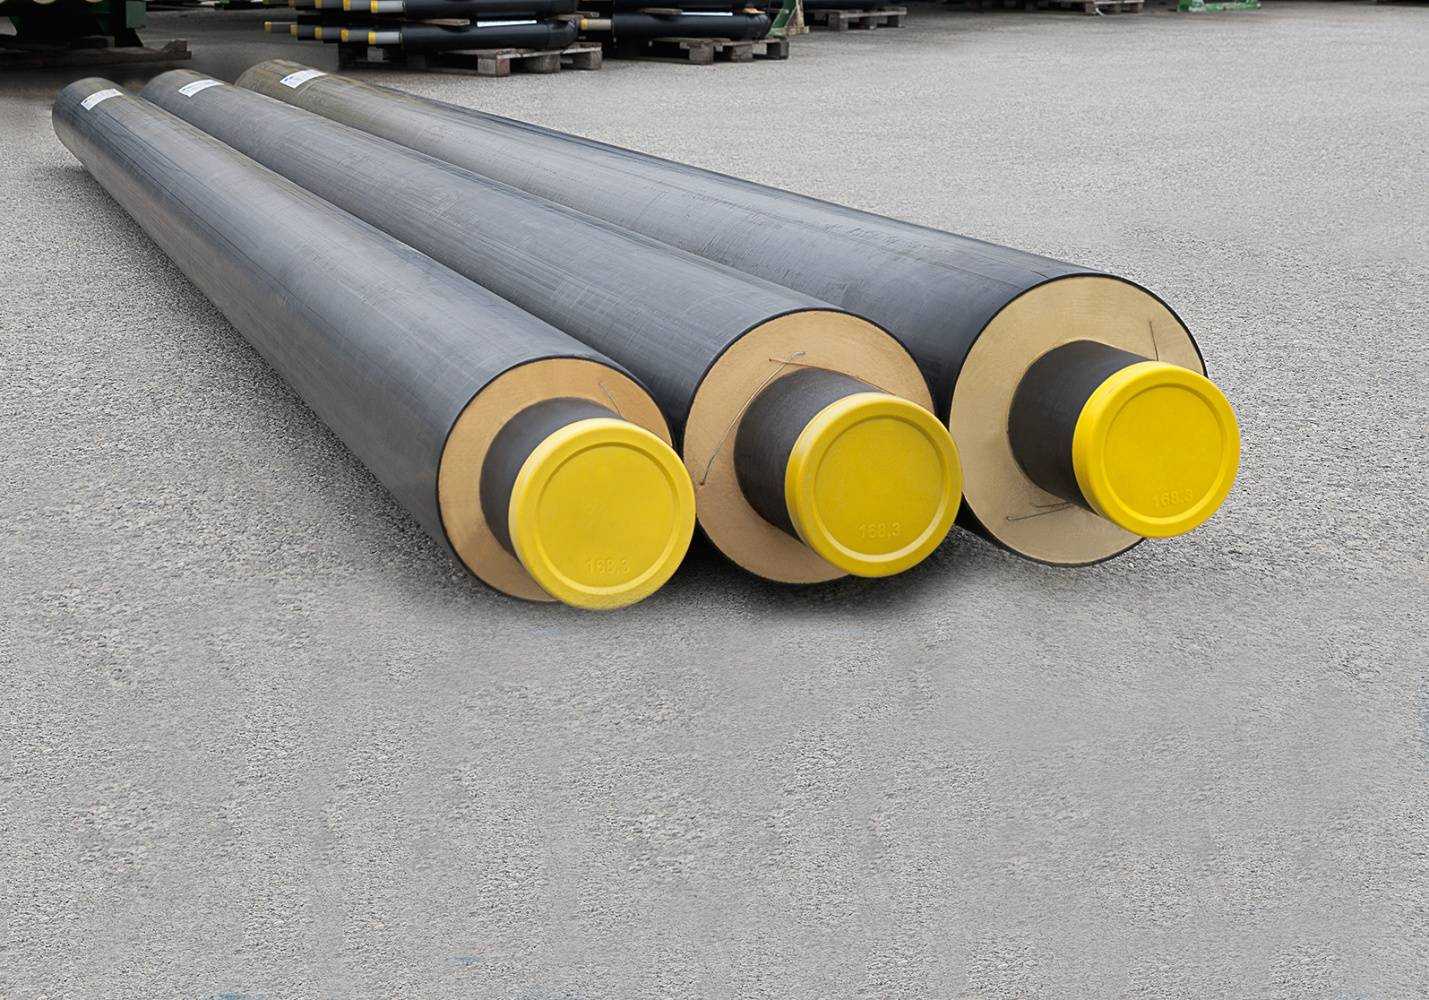 Все стальные трубопроводы, укладываемые в грунт, должны иметь защитные изоляционные покрытия. в зависимости от используемых материалов изоляционные покрытия могут быть: